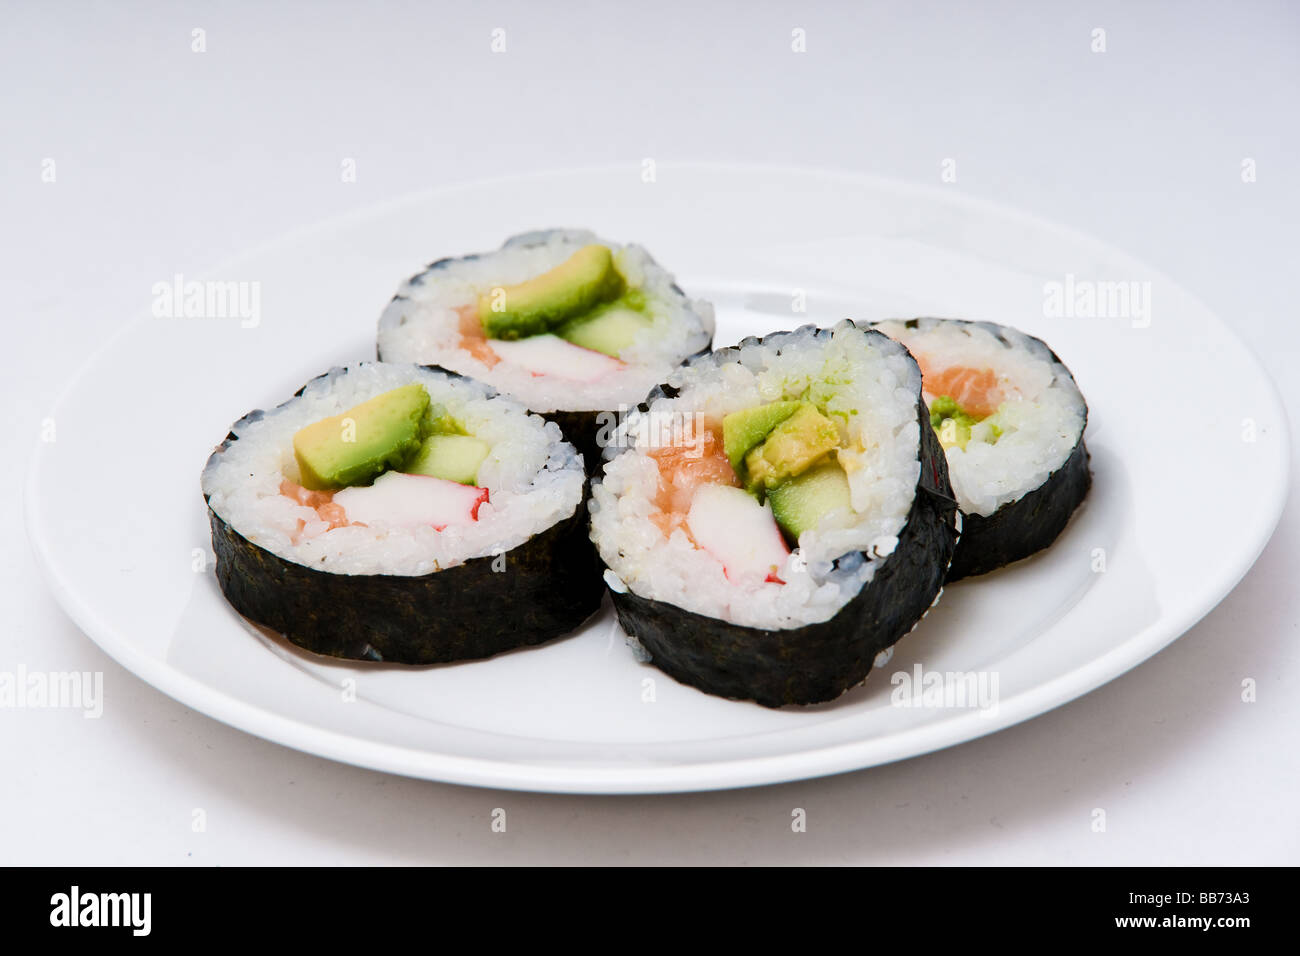 Una piastra bianca con quattro maki sushi rotoli contenenti il riso, salmone, avocado e cetrioli avvolto in nori, alghe. Foto Stock